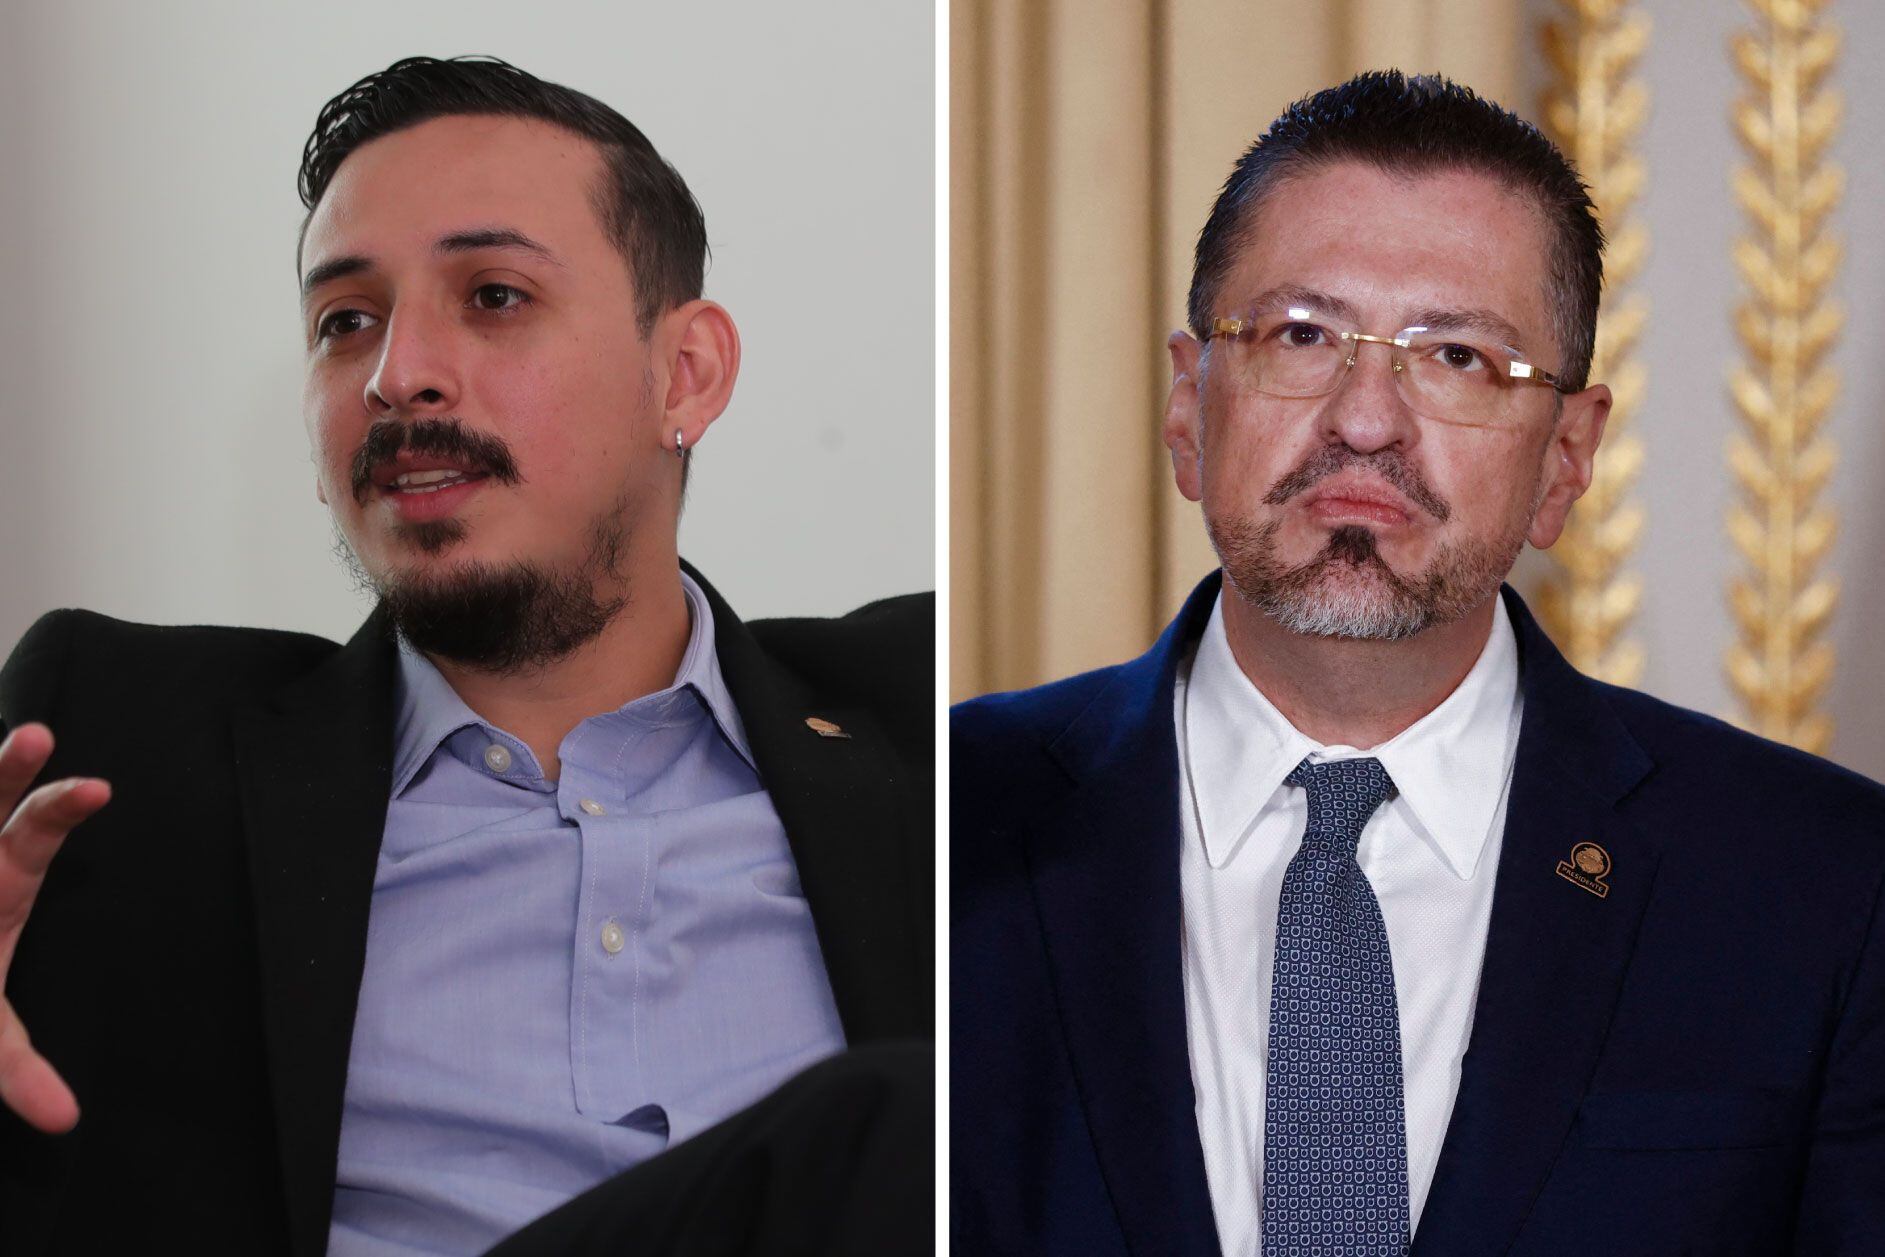 El diputado frenteamplista Ariel Robles (izquierda) reaccionó este miércoles ante los comentarios emitidos en su contra por el presidente de la República, Rodrigo Chaves.